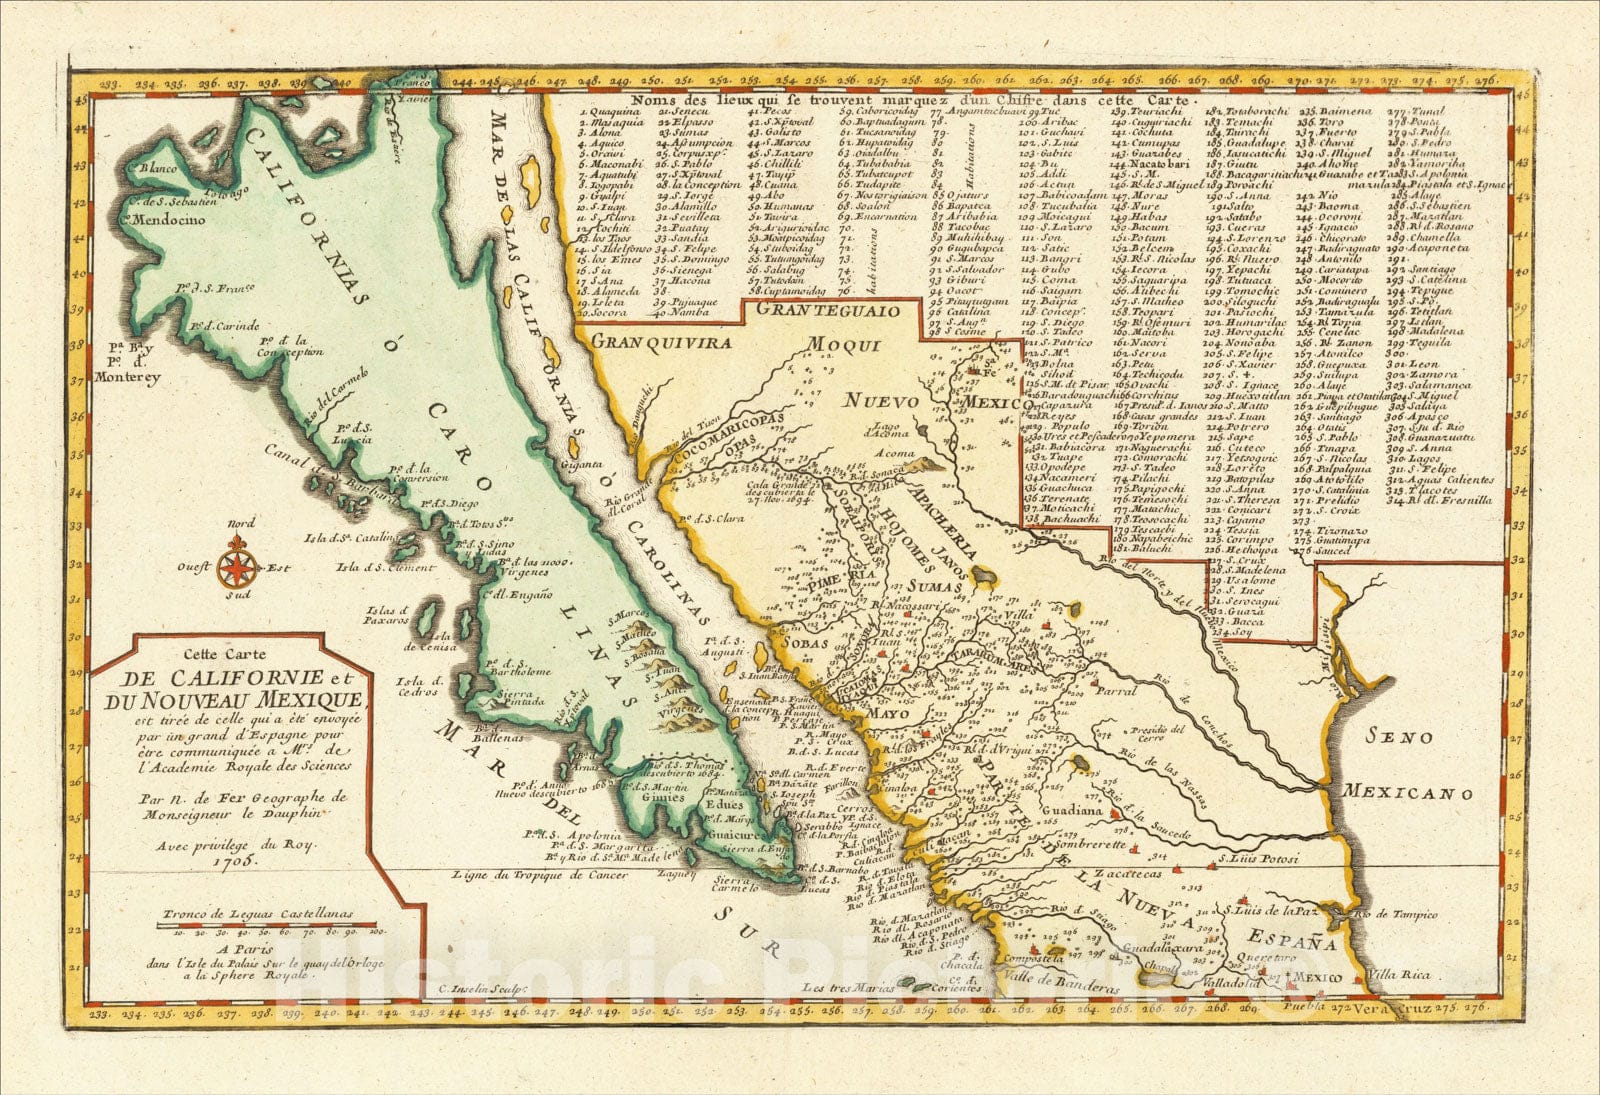 Historic Map : Cette Carte De Californie et Du Nouveau Mexique, 1705 [California as an Island], 1705, Nicolas de Fer, Vintage Wall Art